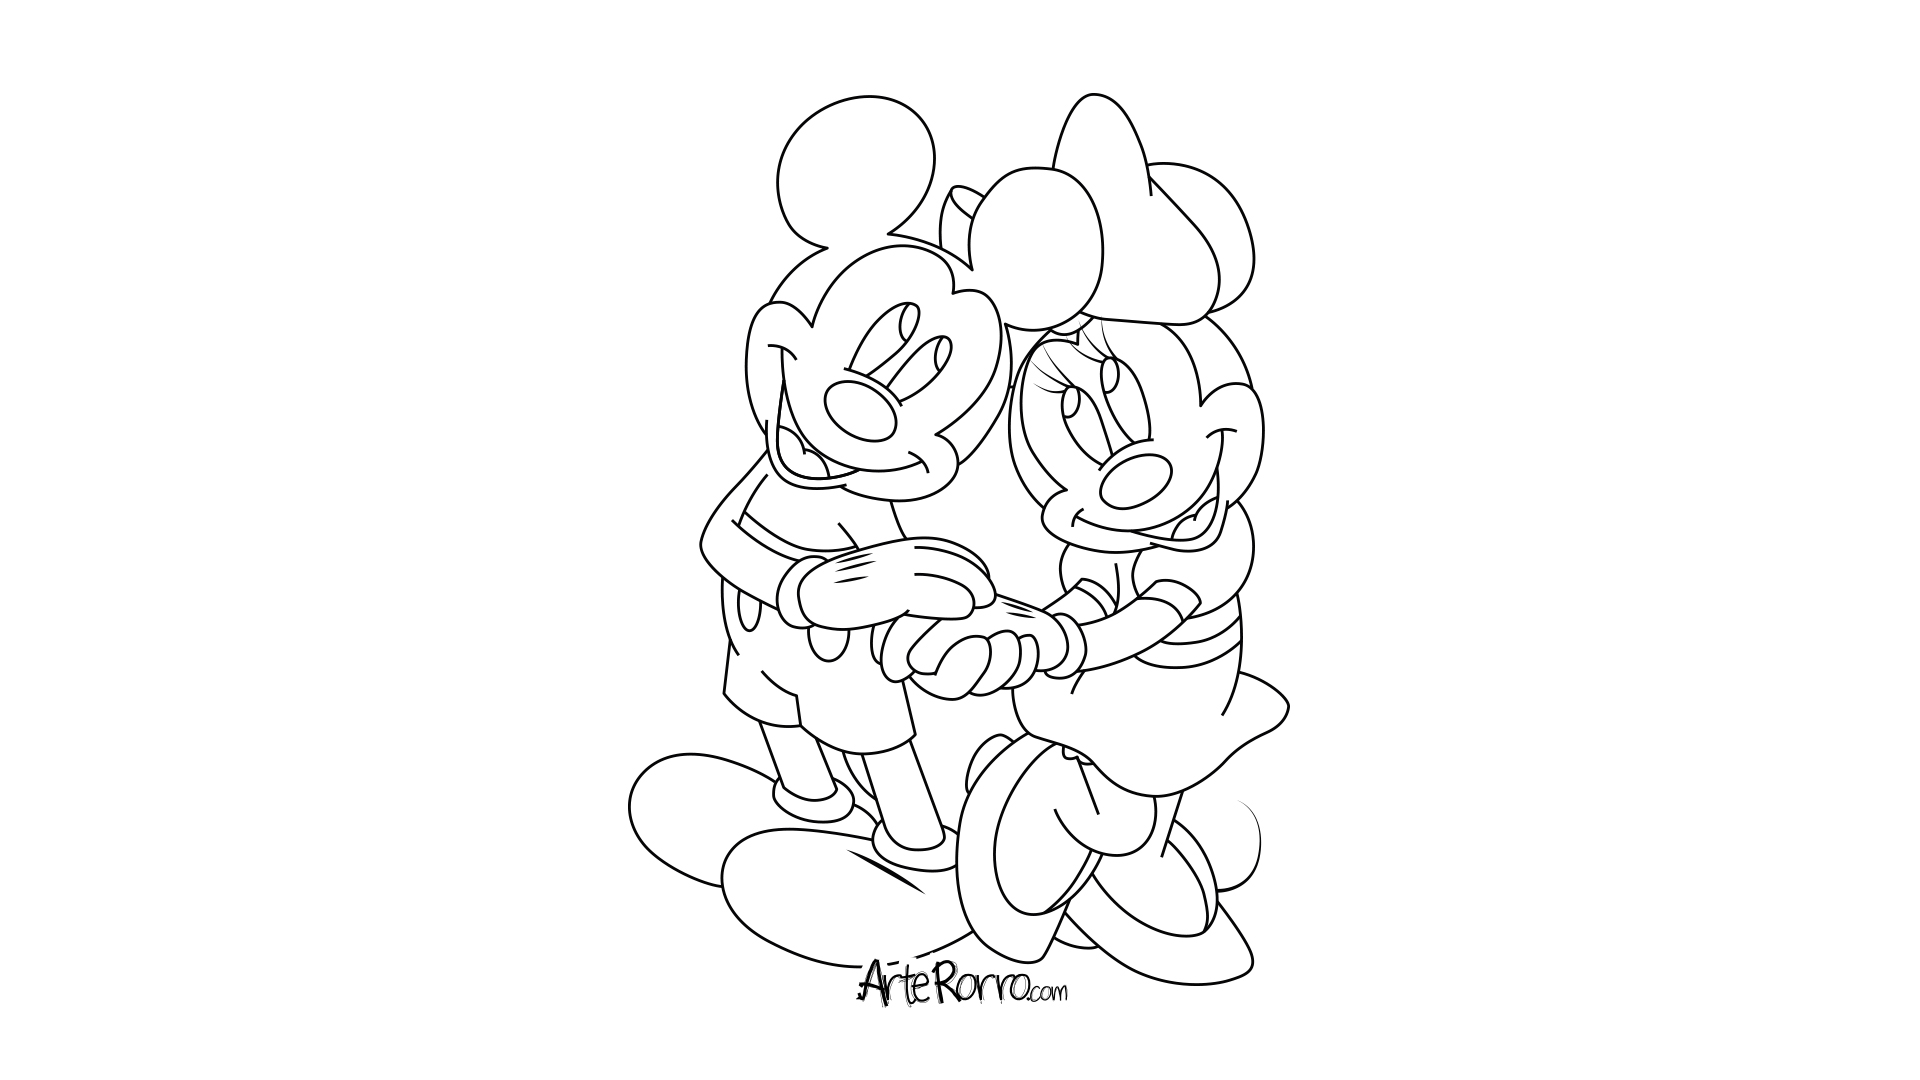 Micky & Minnie Mouse · Arte Rorro